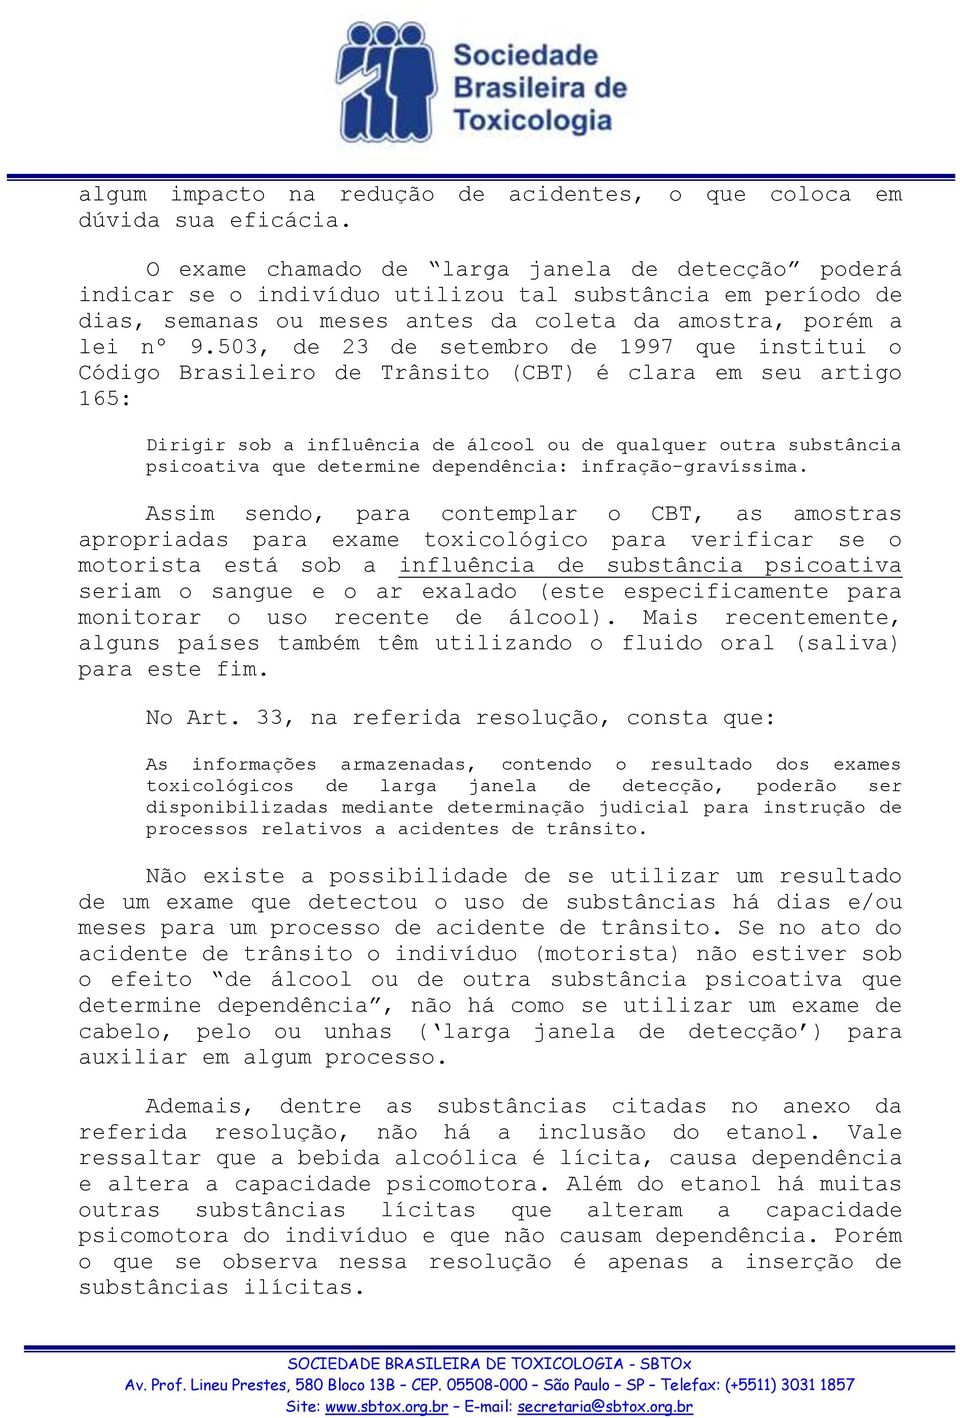 503, de 23 de setembro de 1997 que institui o Código Brasileiro de Trânsito (CBT) é clara em seu artigo 165: Dirigir sob a influência de álcool ou de qualquer outra substância psicoativa que